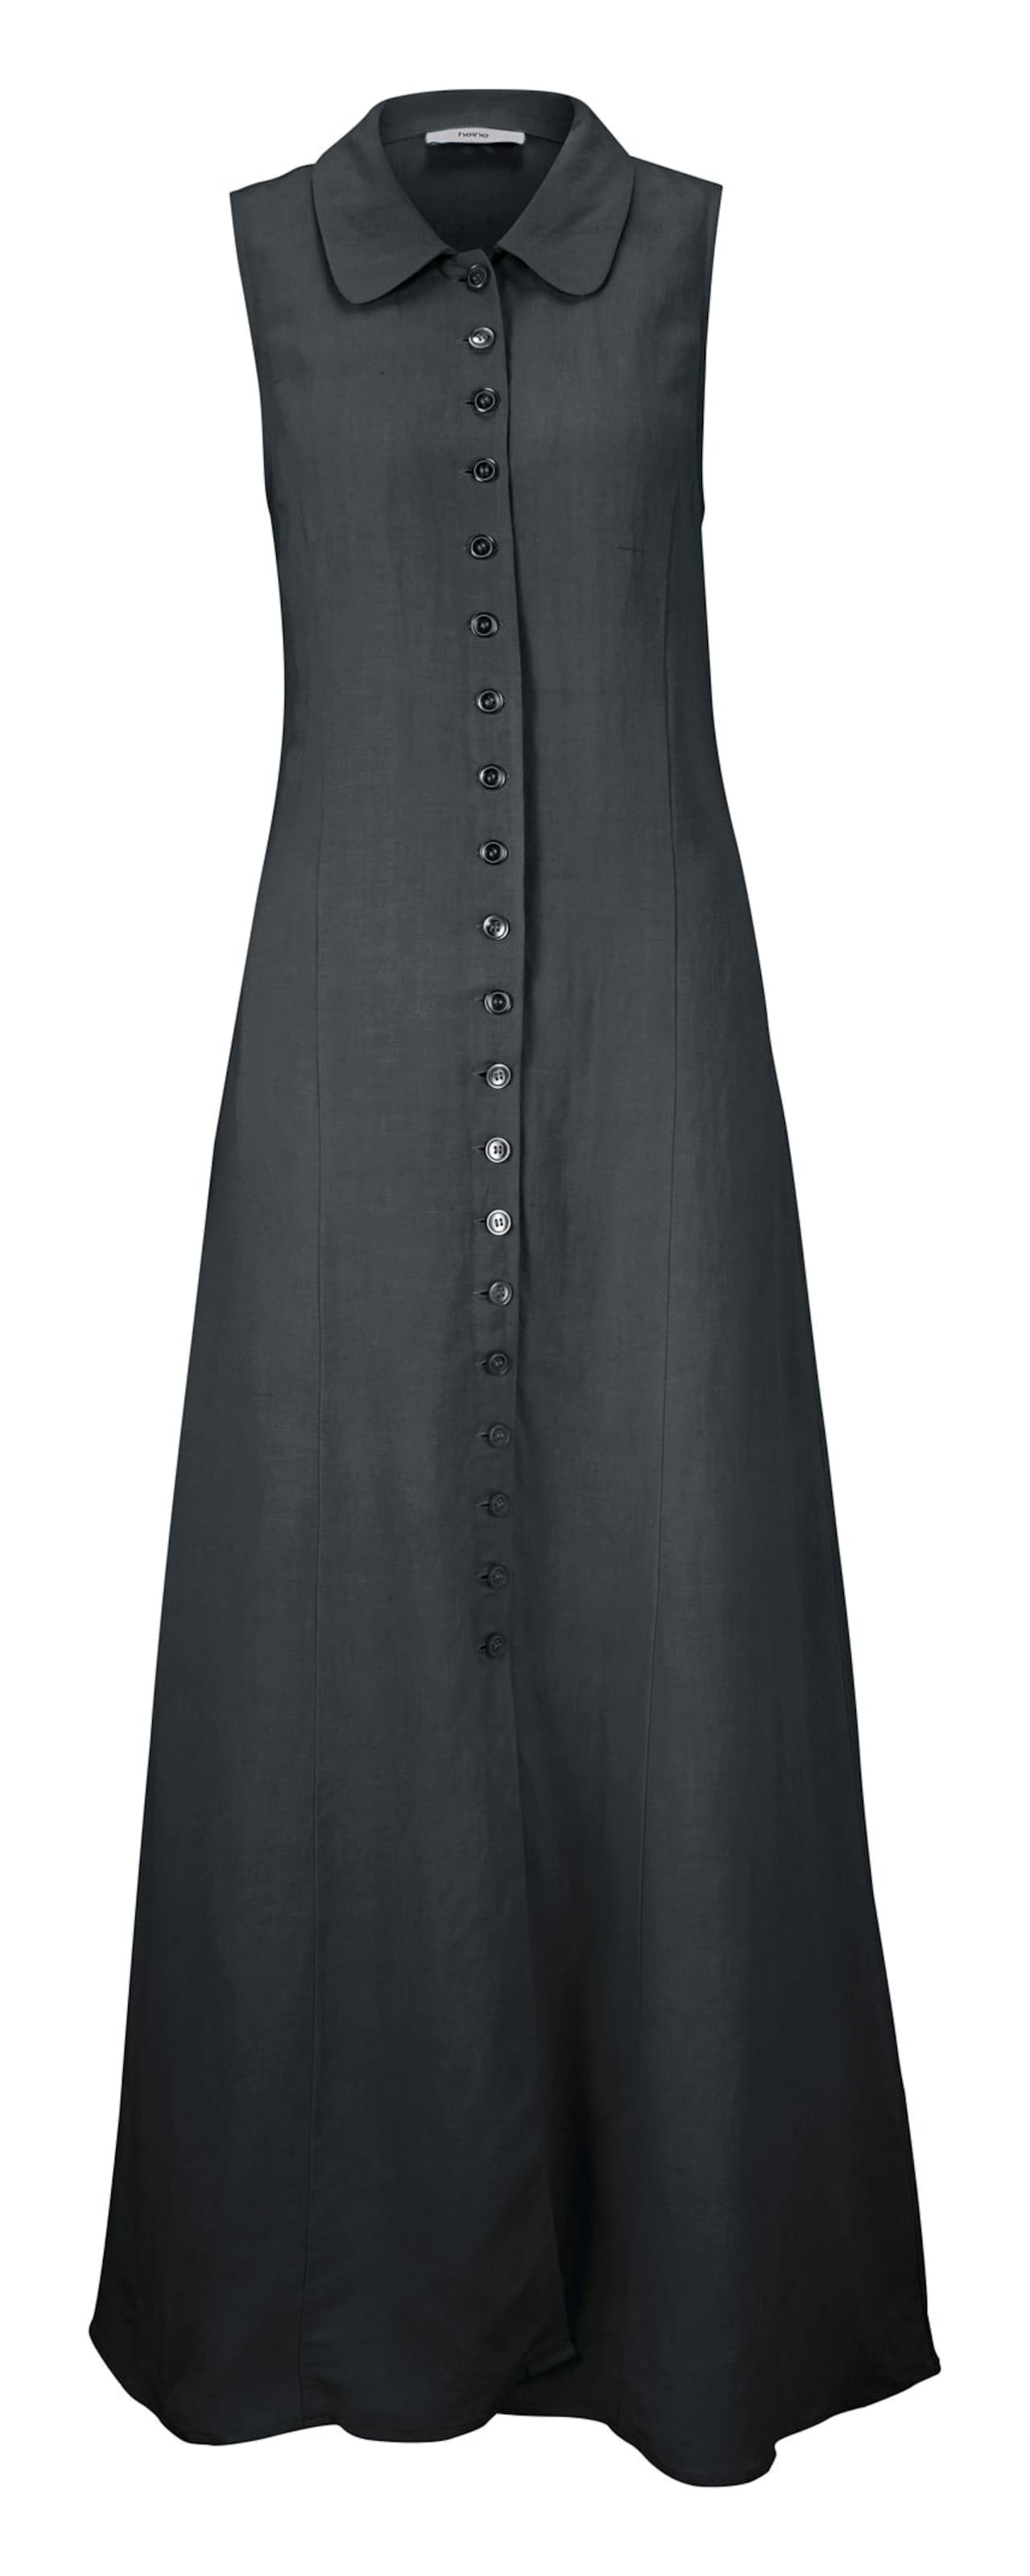 Damenmode Kleider Ashley Brooke Leinen-Kleid in schwarz 